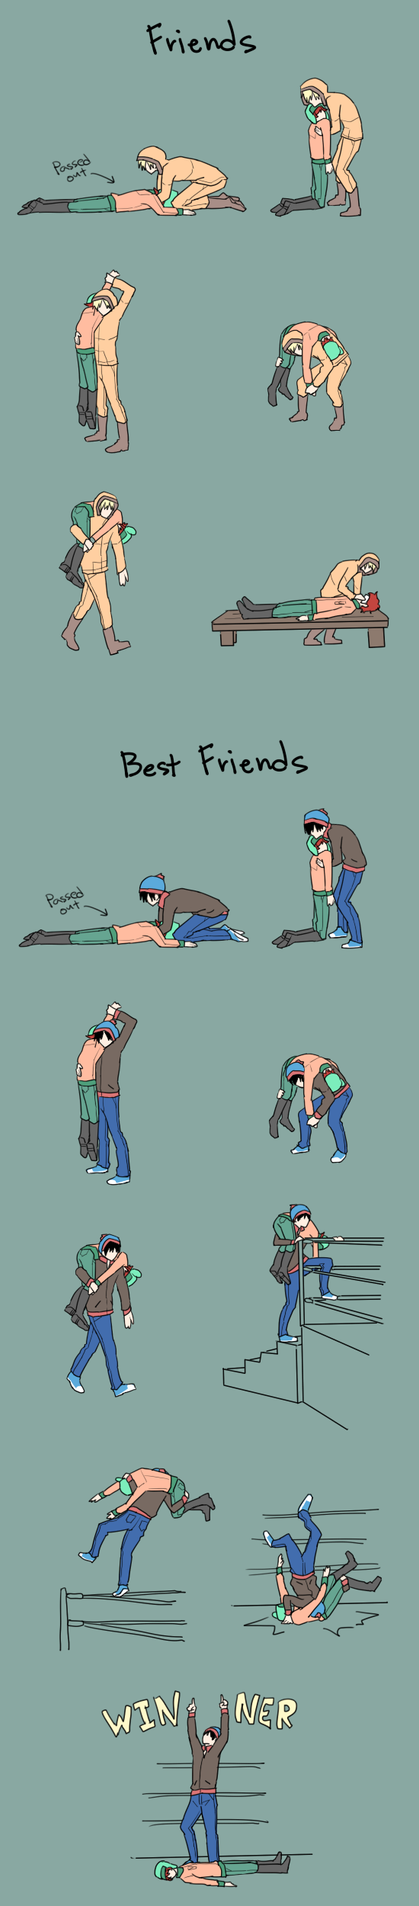 [Image: friends_vs_best_friends_by_azngirllh-d7eiwze.png]